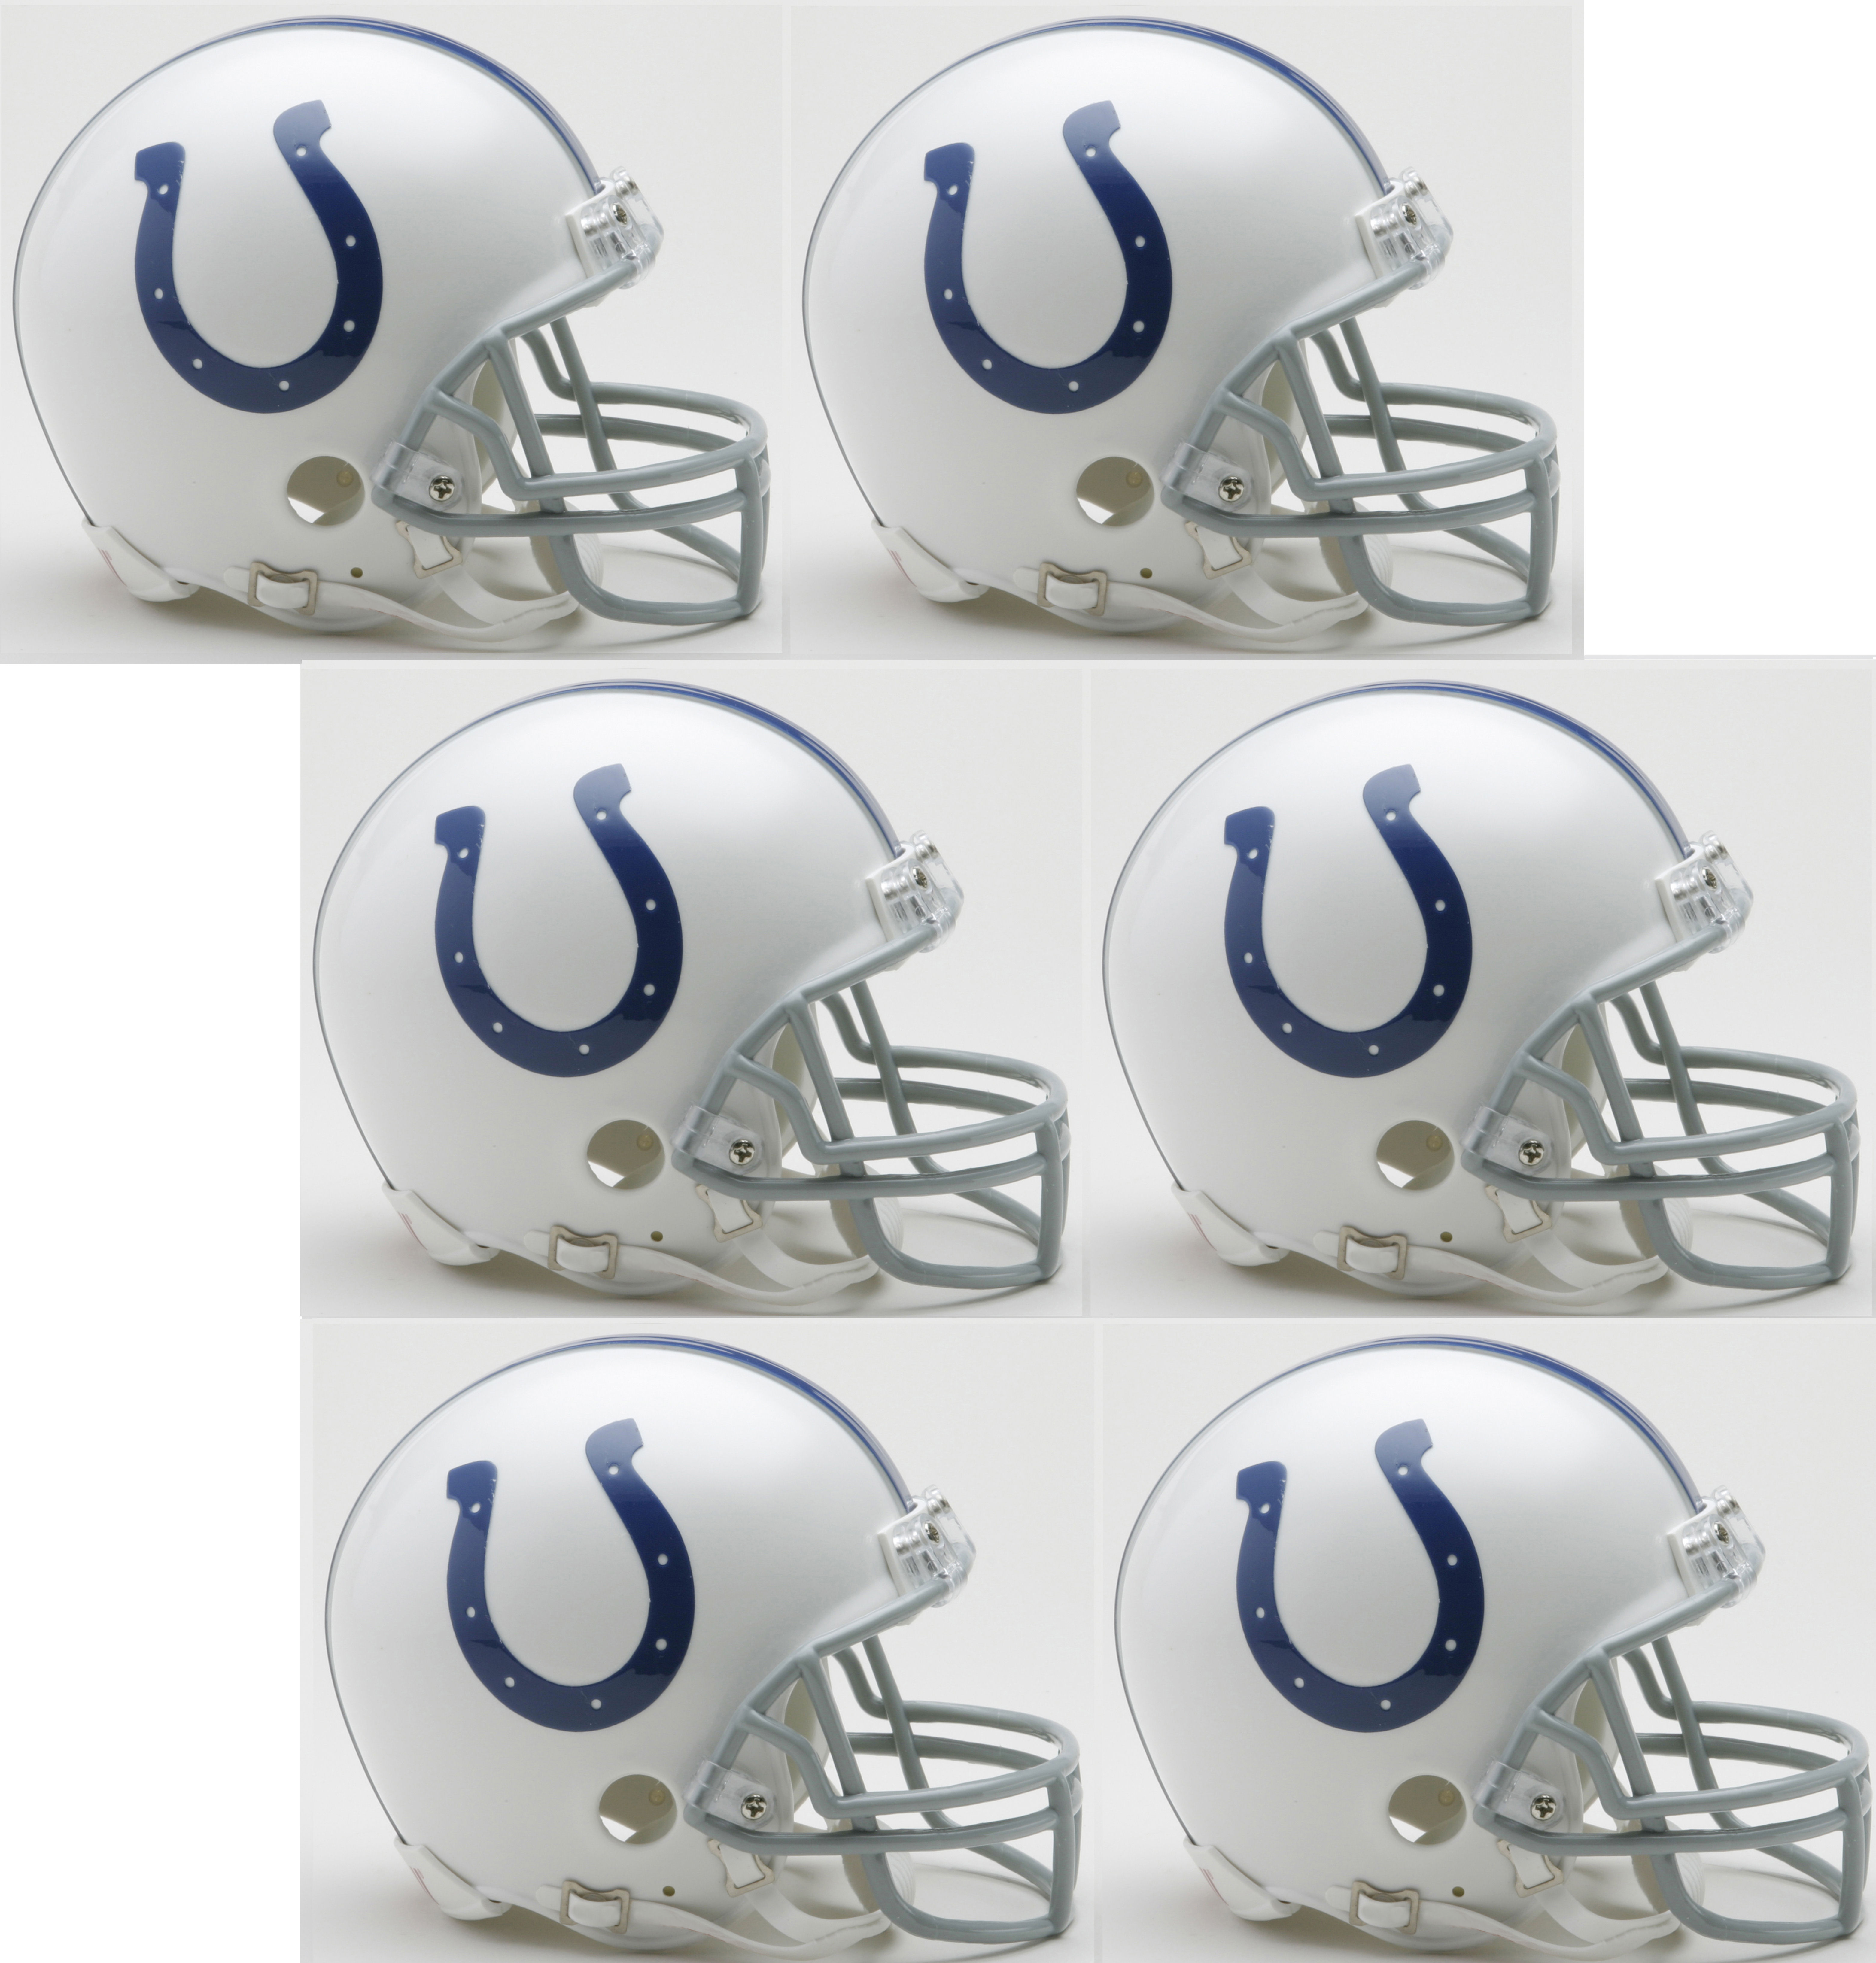 Indianapolis Colts NFL Mini Football Helmet 6 count